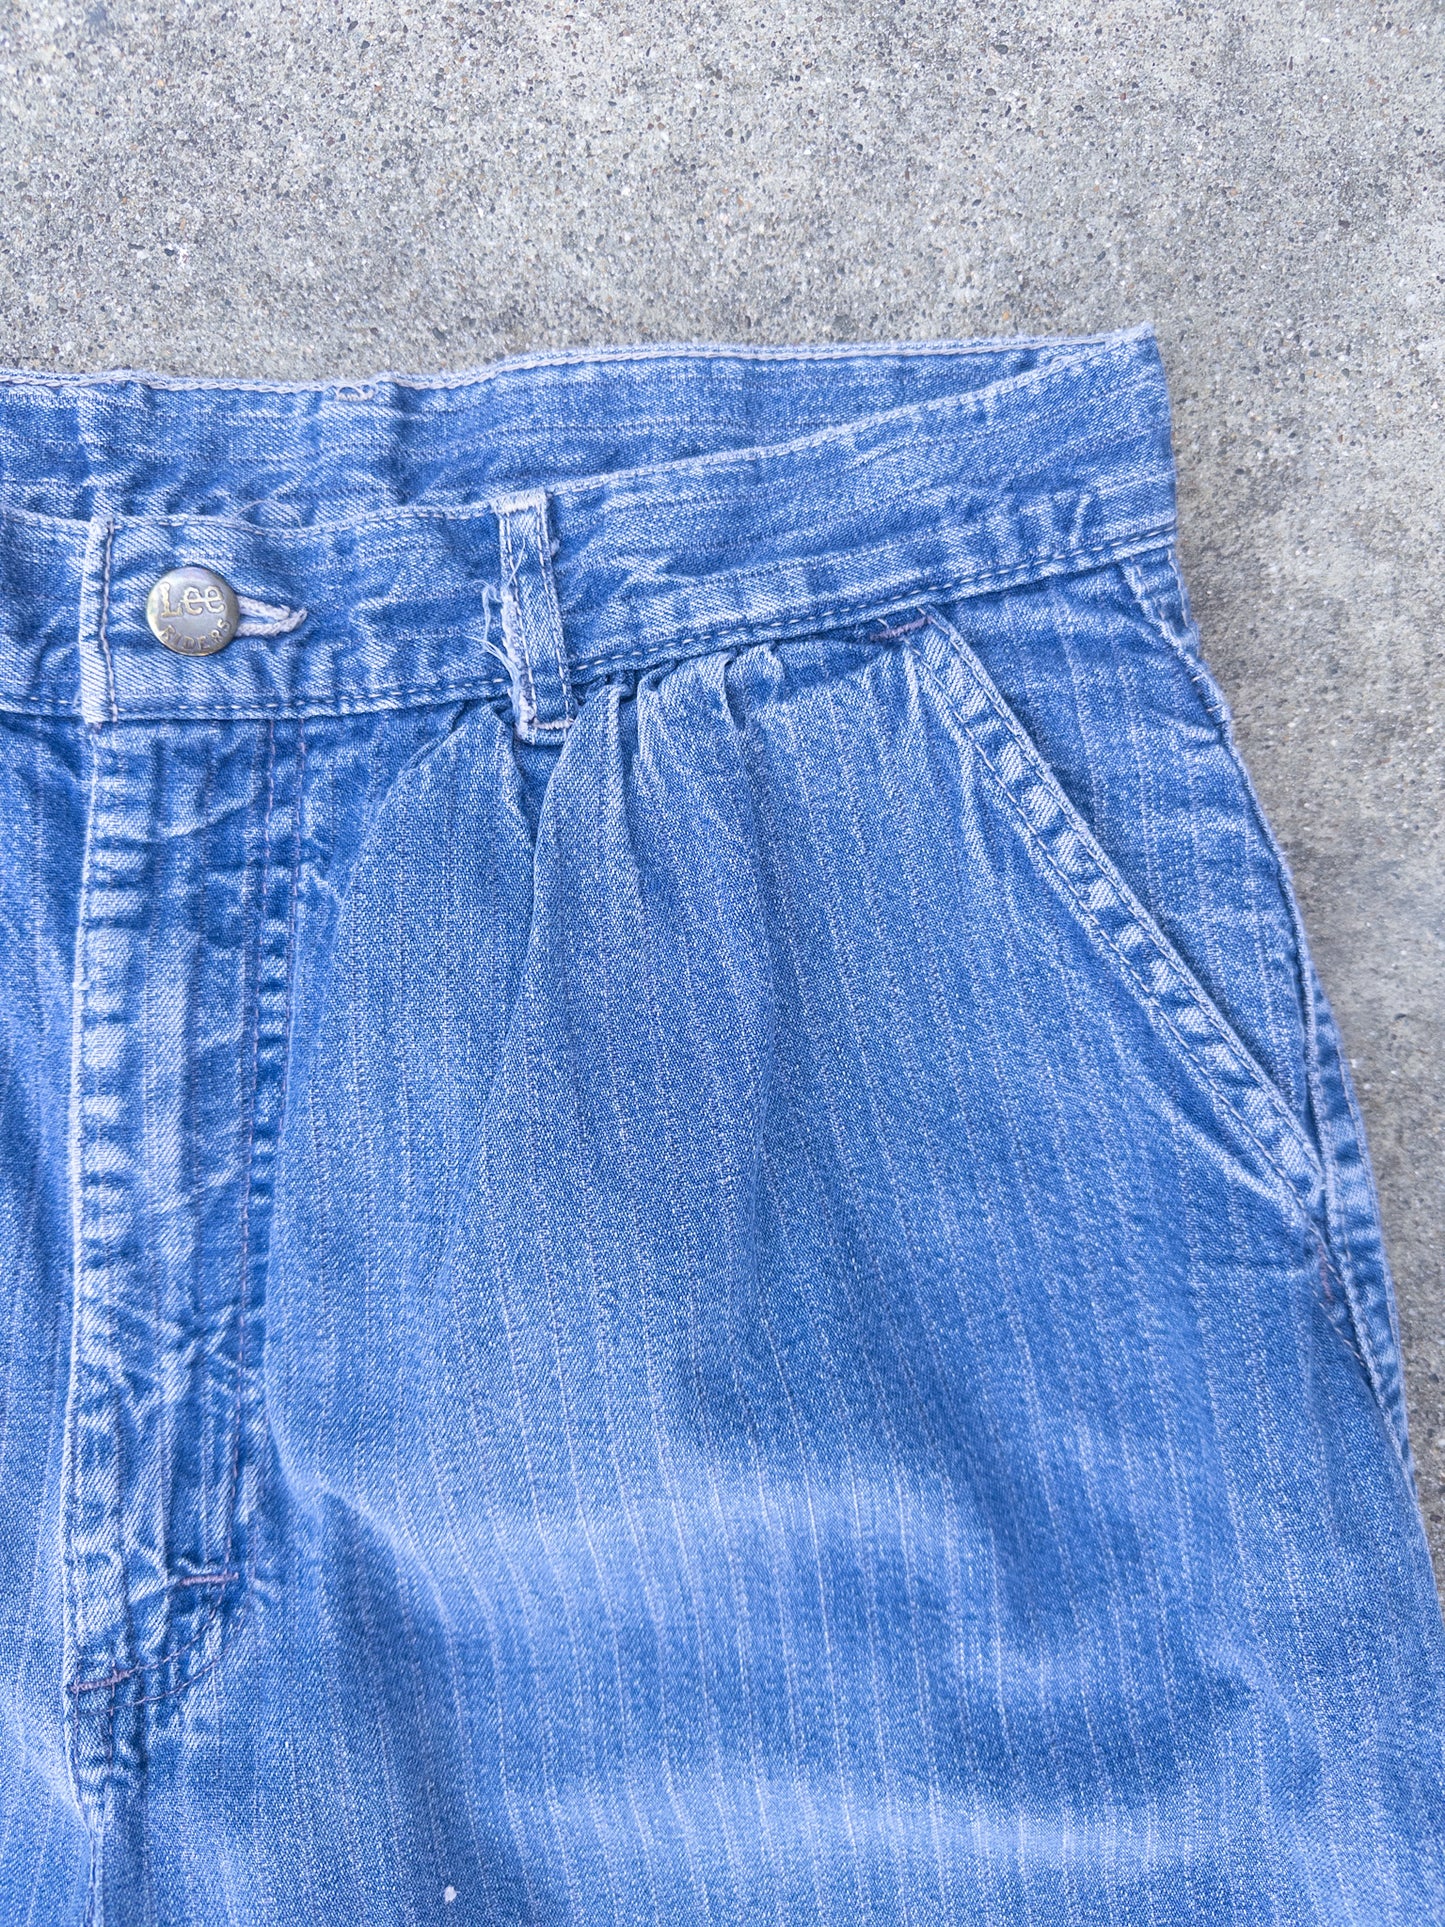 Vintage 90s Lee Riders Rail Road Strip Jeans